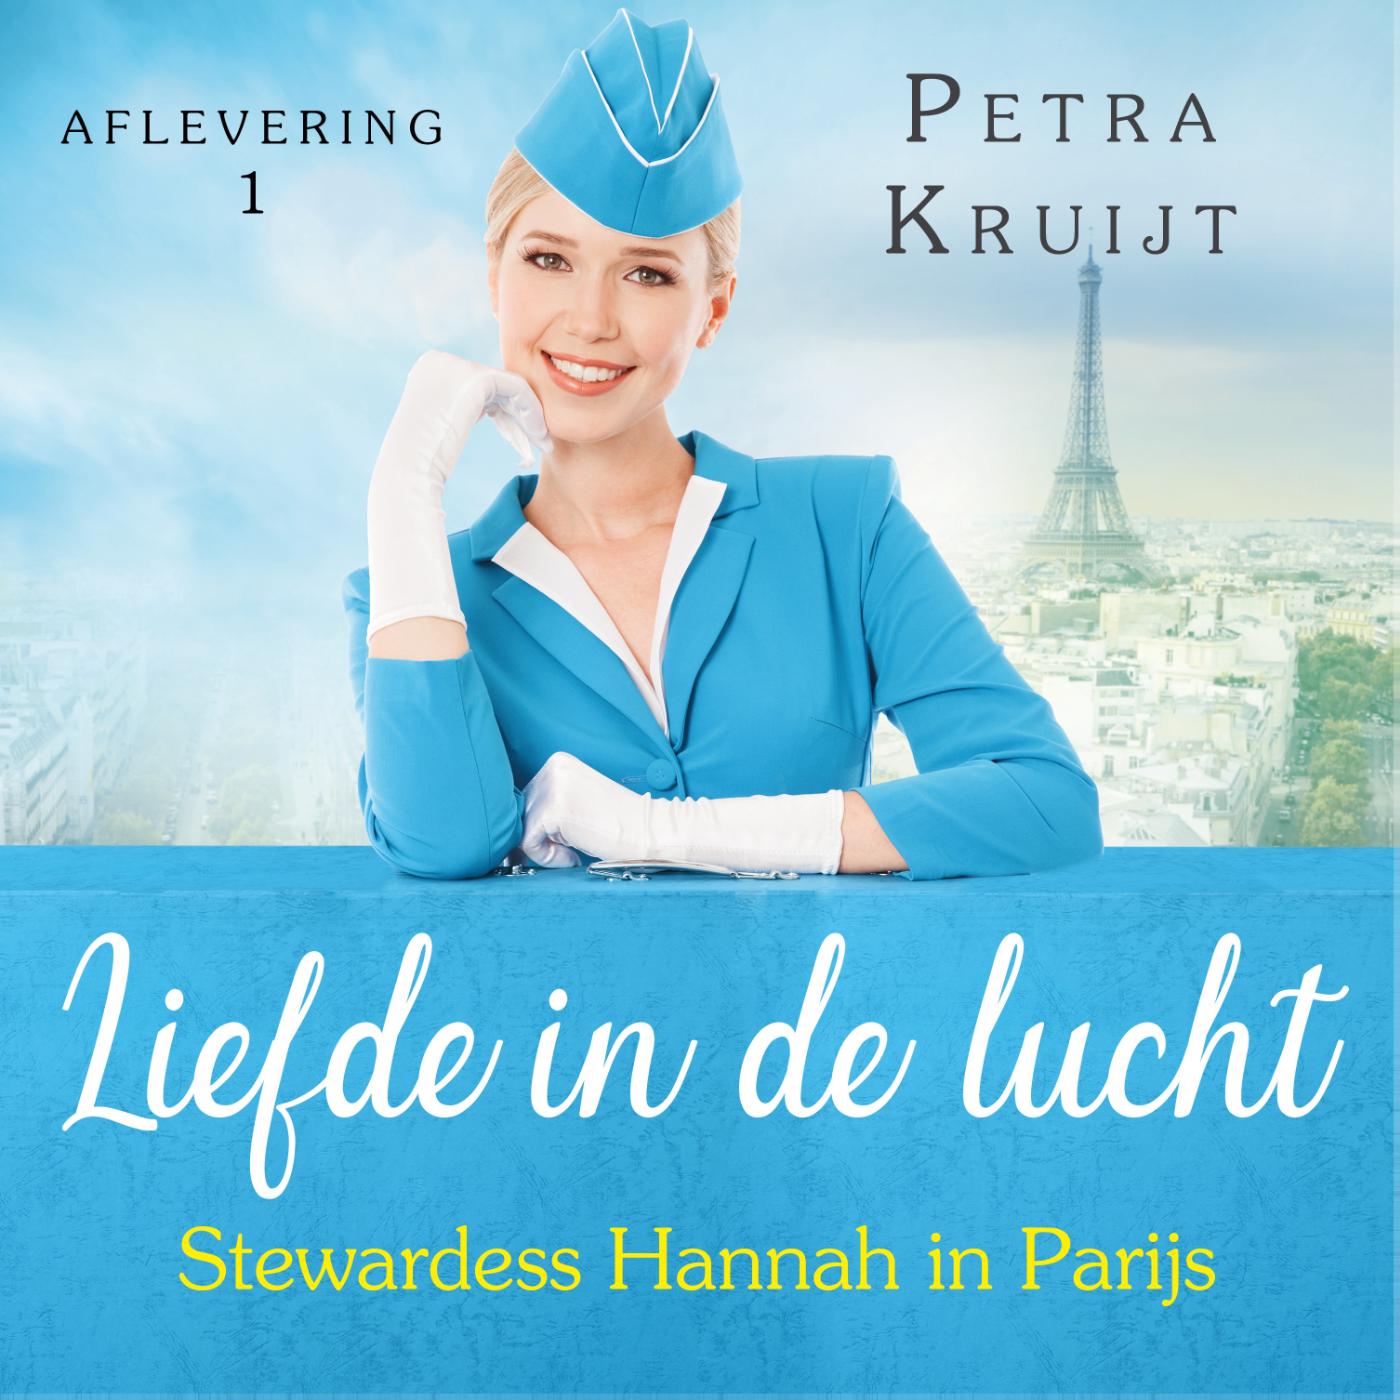 Stewardess Hannah in Parijs (Ebook)